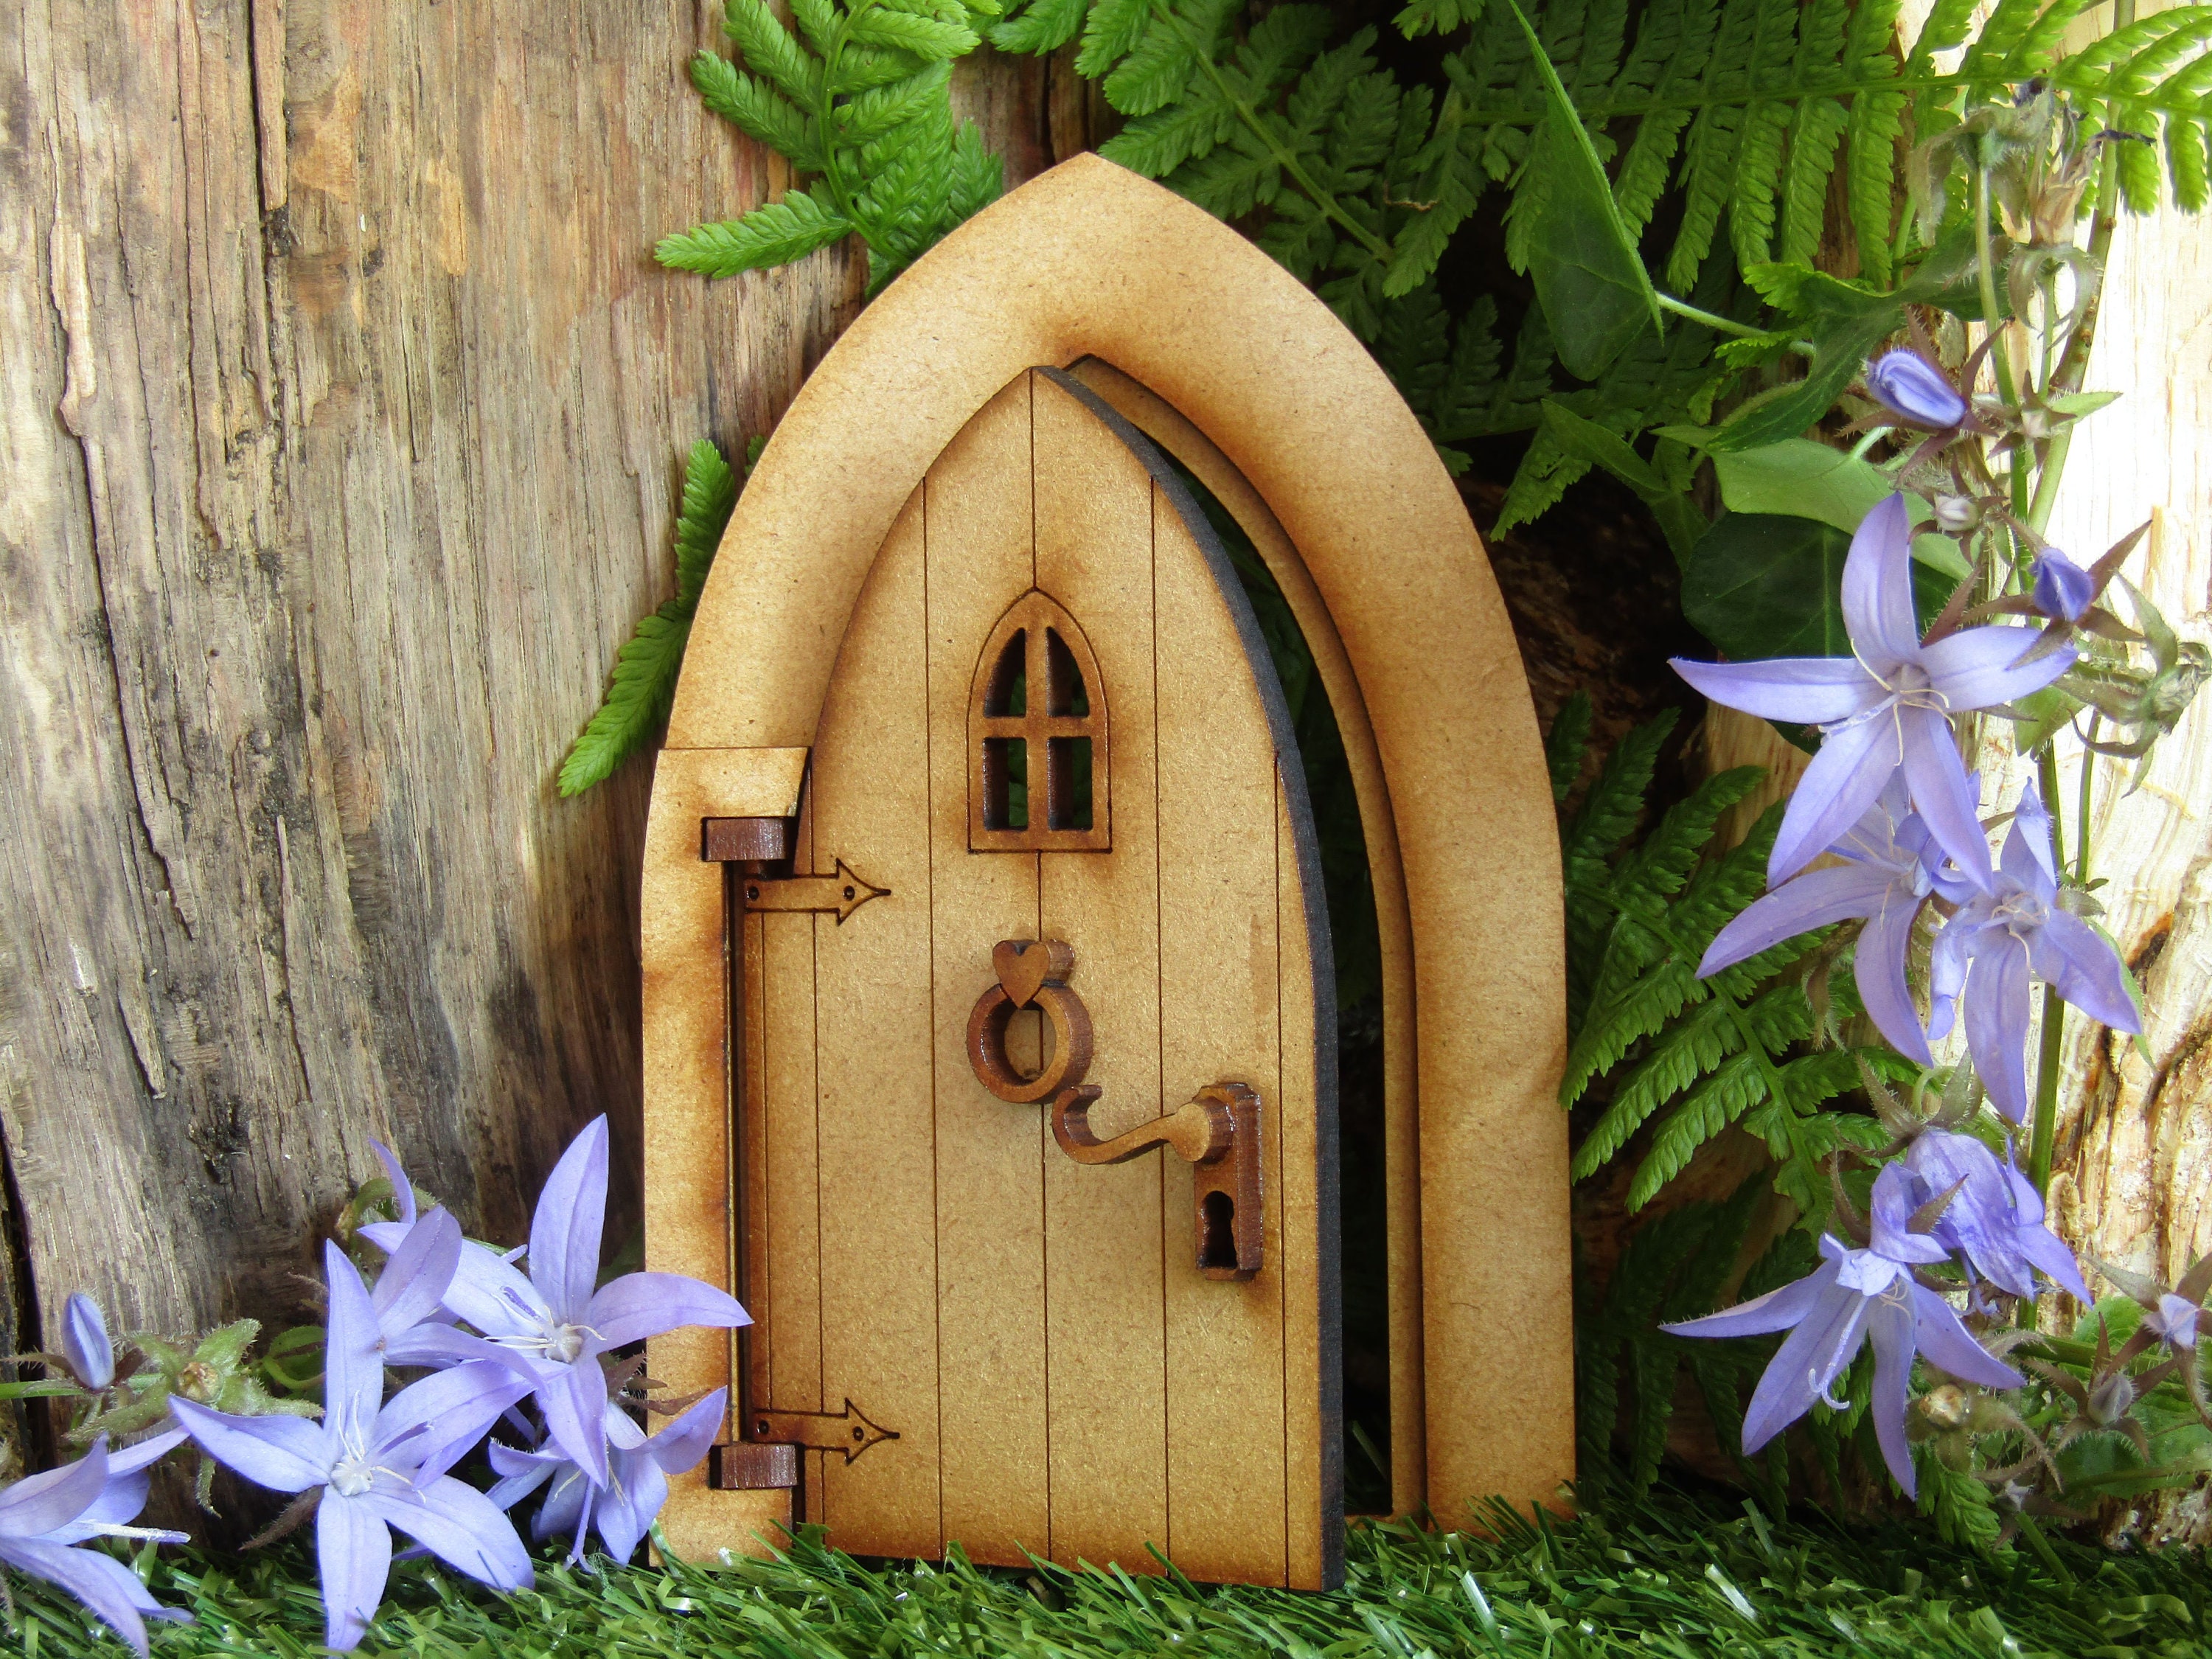 Qiguai Fairy Fairy House Open Fairy Door Aperture Craft Kit Decoration Accessories 3D Wooden Door Handmade DIY Crafts Outdoor Garden Decoration Creative Gifts 